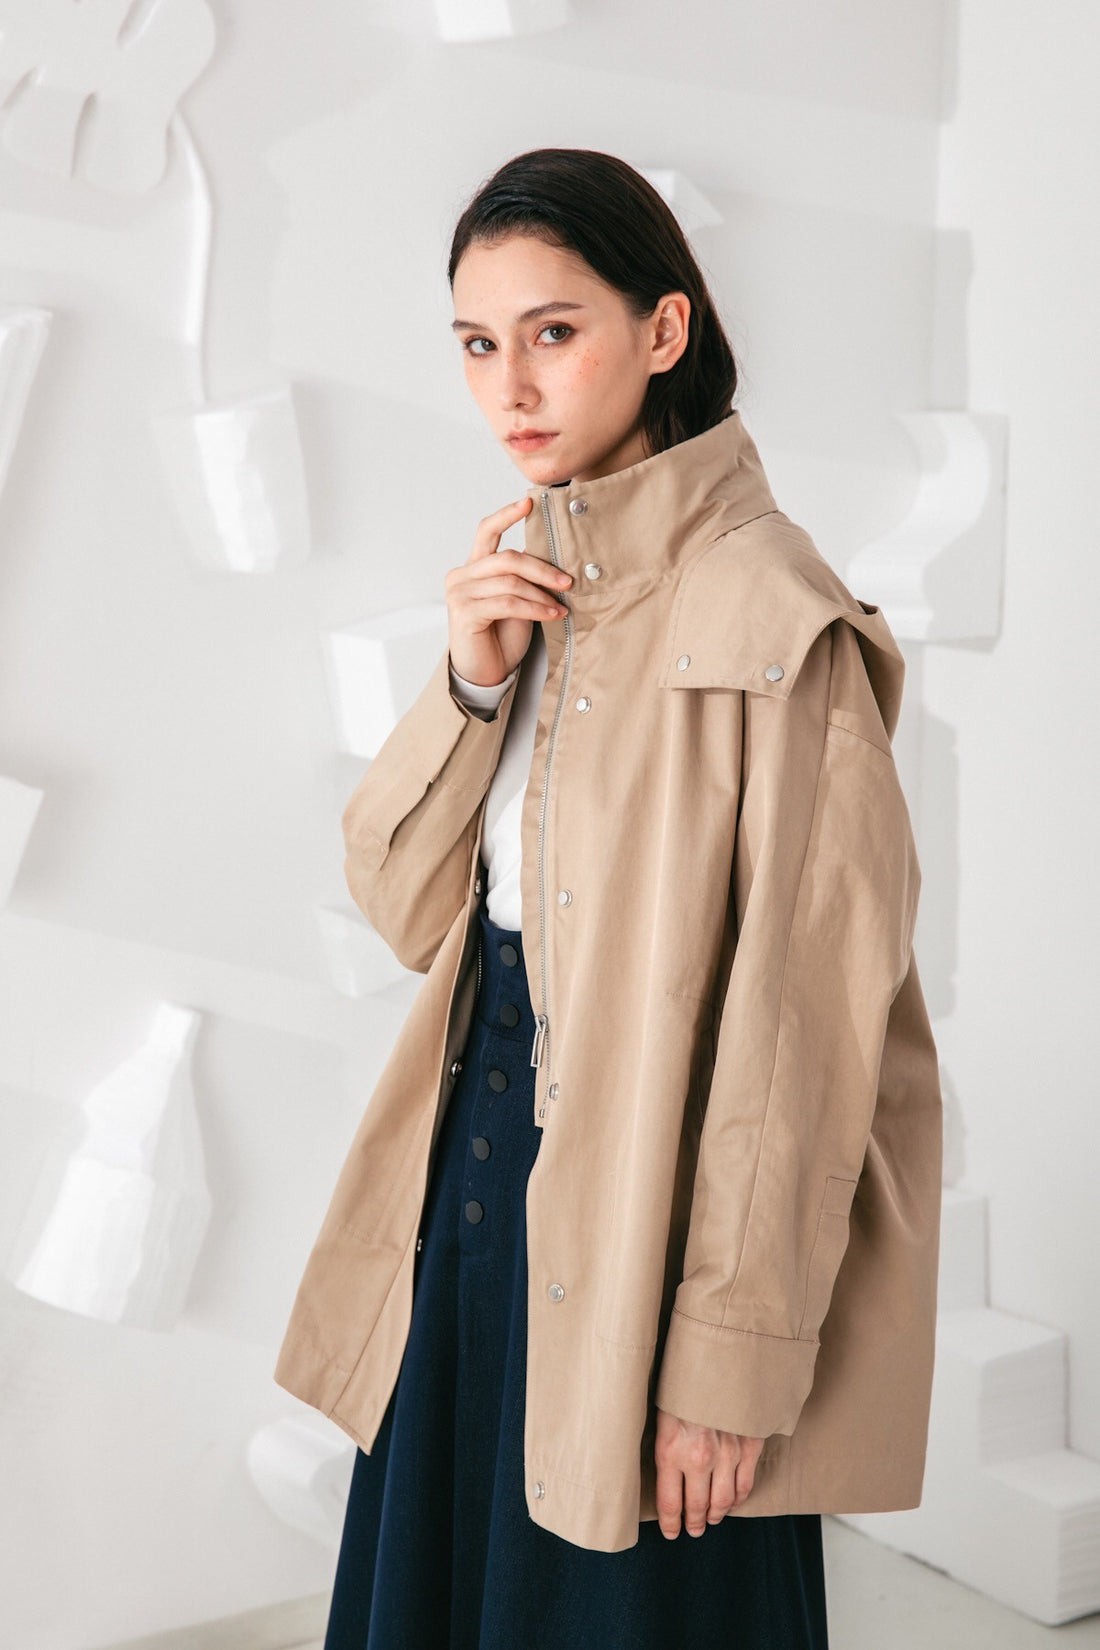 SKYE San Francisco SF shop ethical modern minimalist quality women clothing fashion Gabrielle Coat beige 3